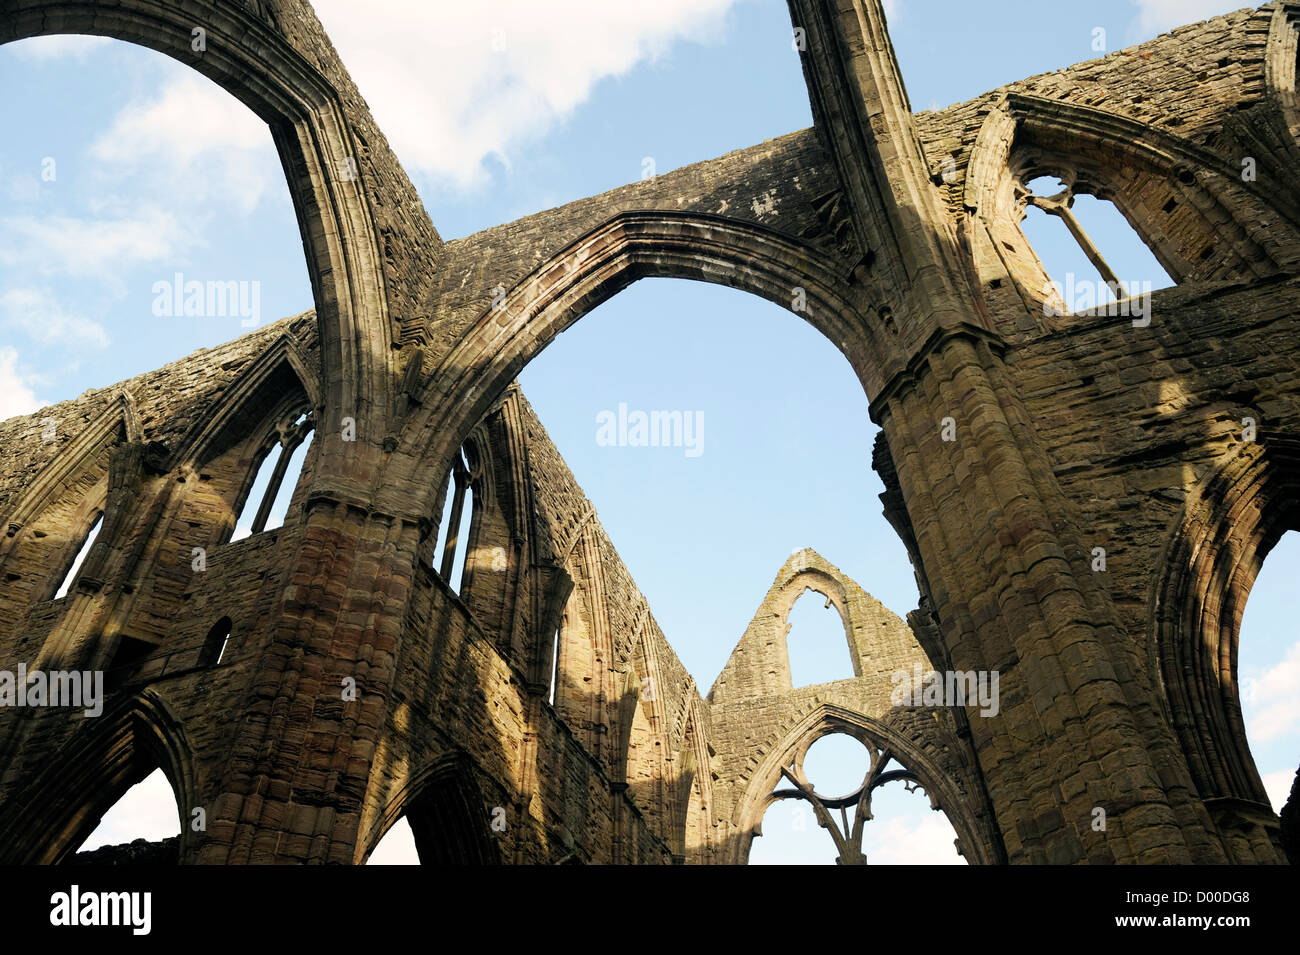 Abbaye de Tintern dans la vallée de la Wye, Monmouthshire, Wales, UK. Christian cistercienne monastère fondé 1131. Transept Central arches Banque D'Images